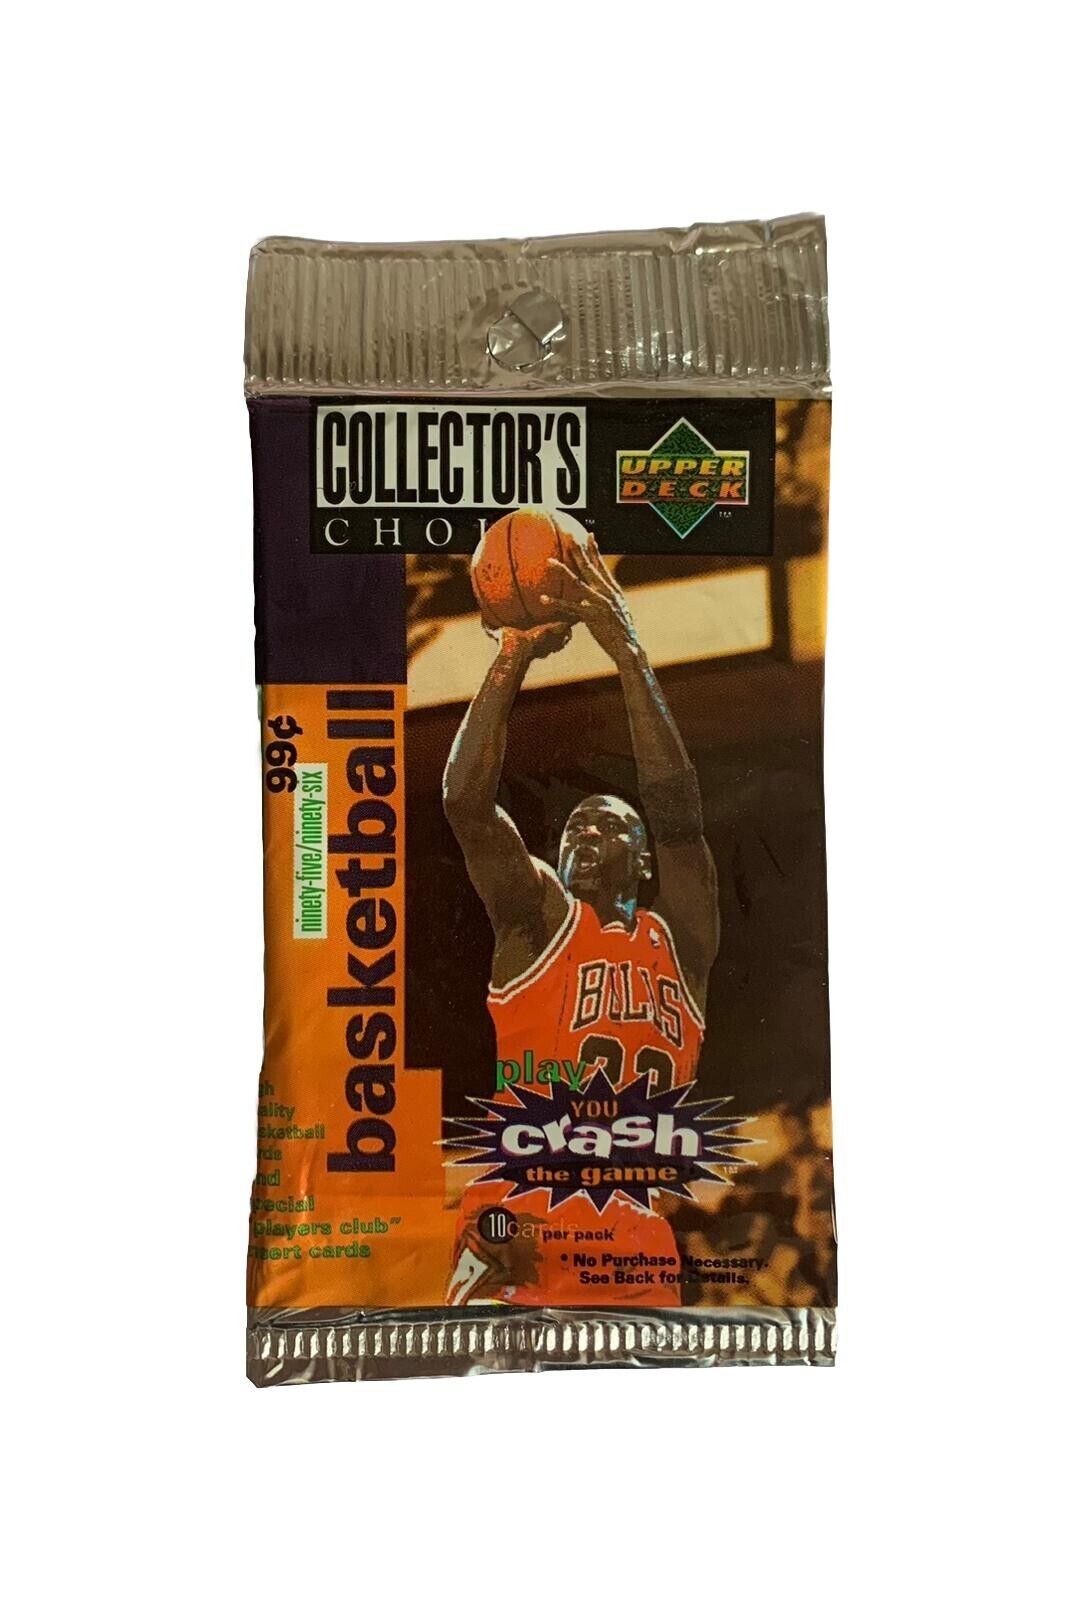 1995-96 Upper Deck COLLECTORS CHOICE NBA Basketball Pack - JORDAN INSERT LOOK 